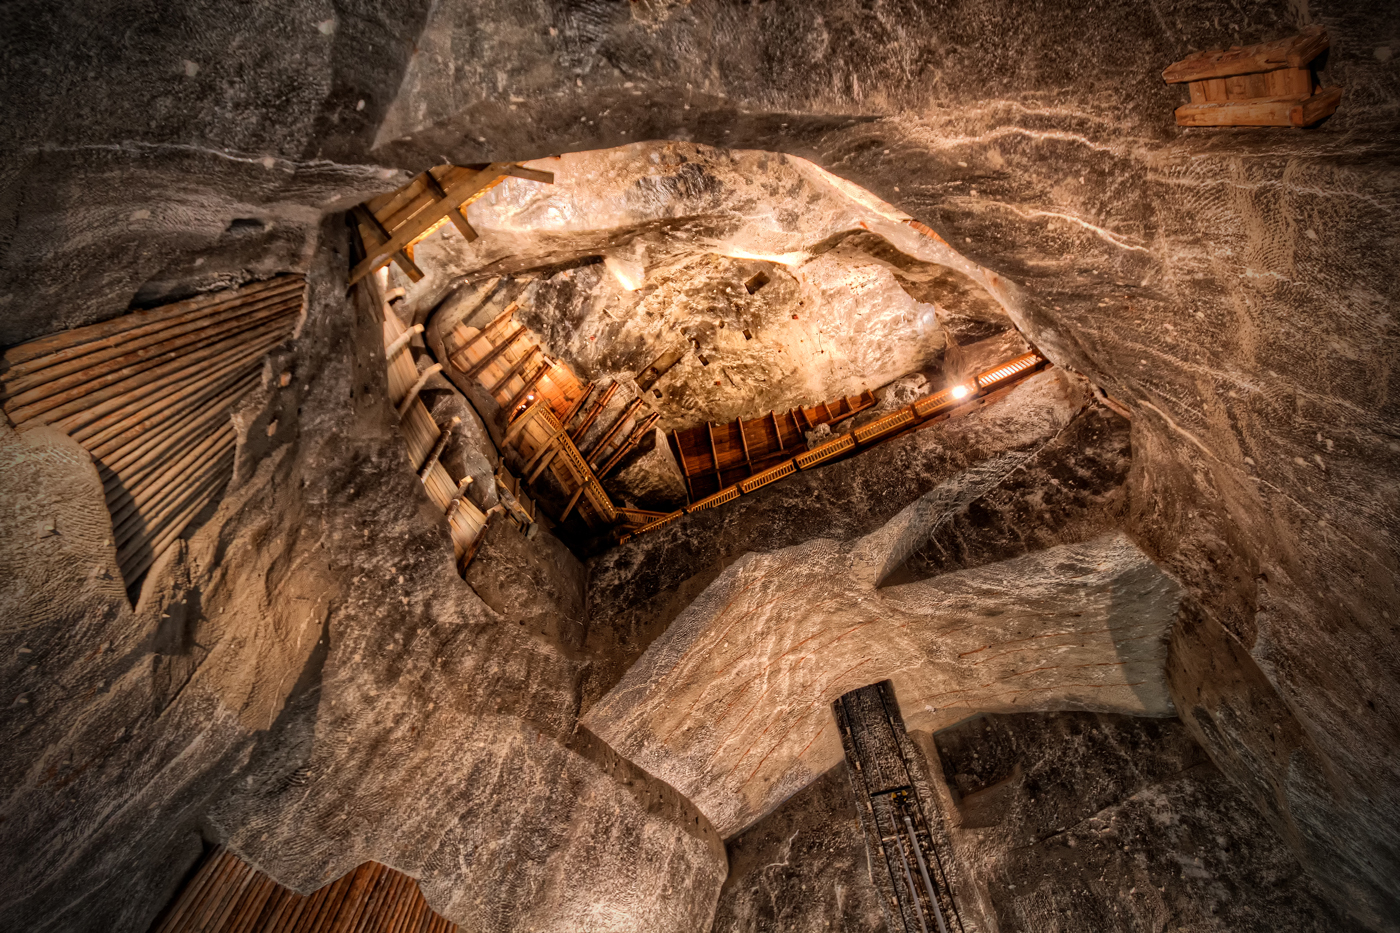 The Galery in Wieliczka Salt Mine